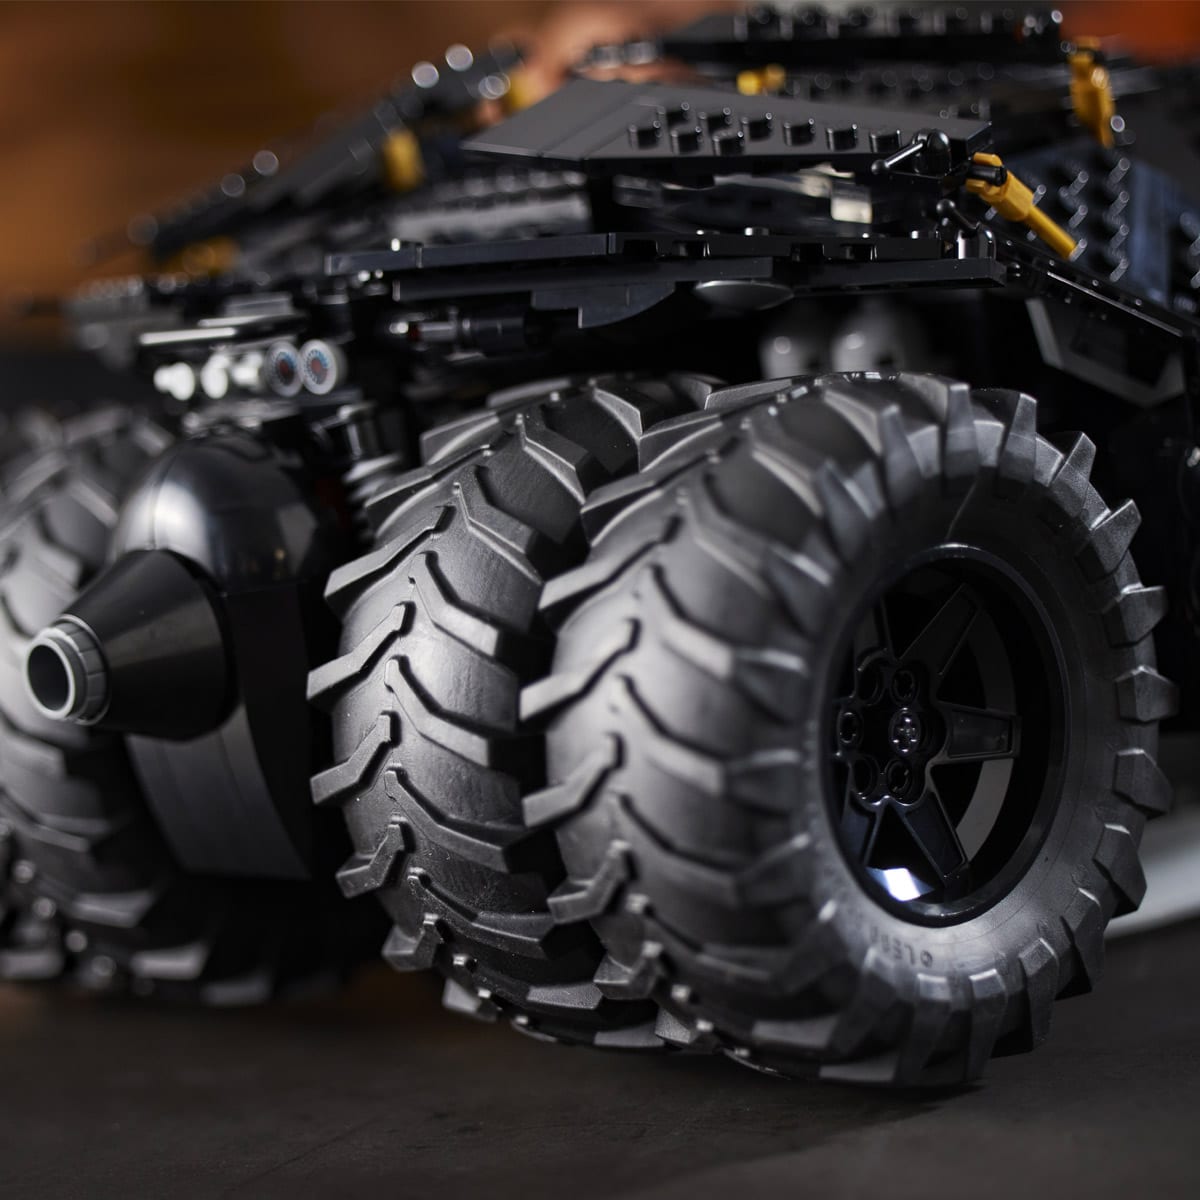 LEGO's nye Tumbler-sæt med 2.049 klodser gør Batman stolt